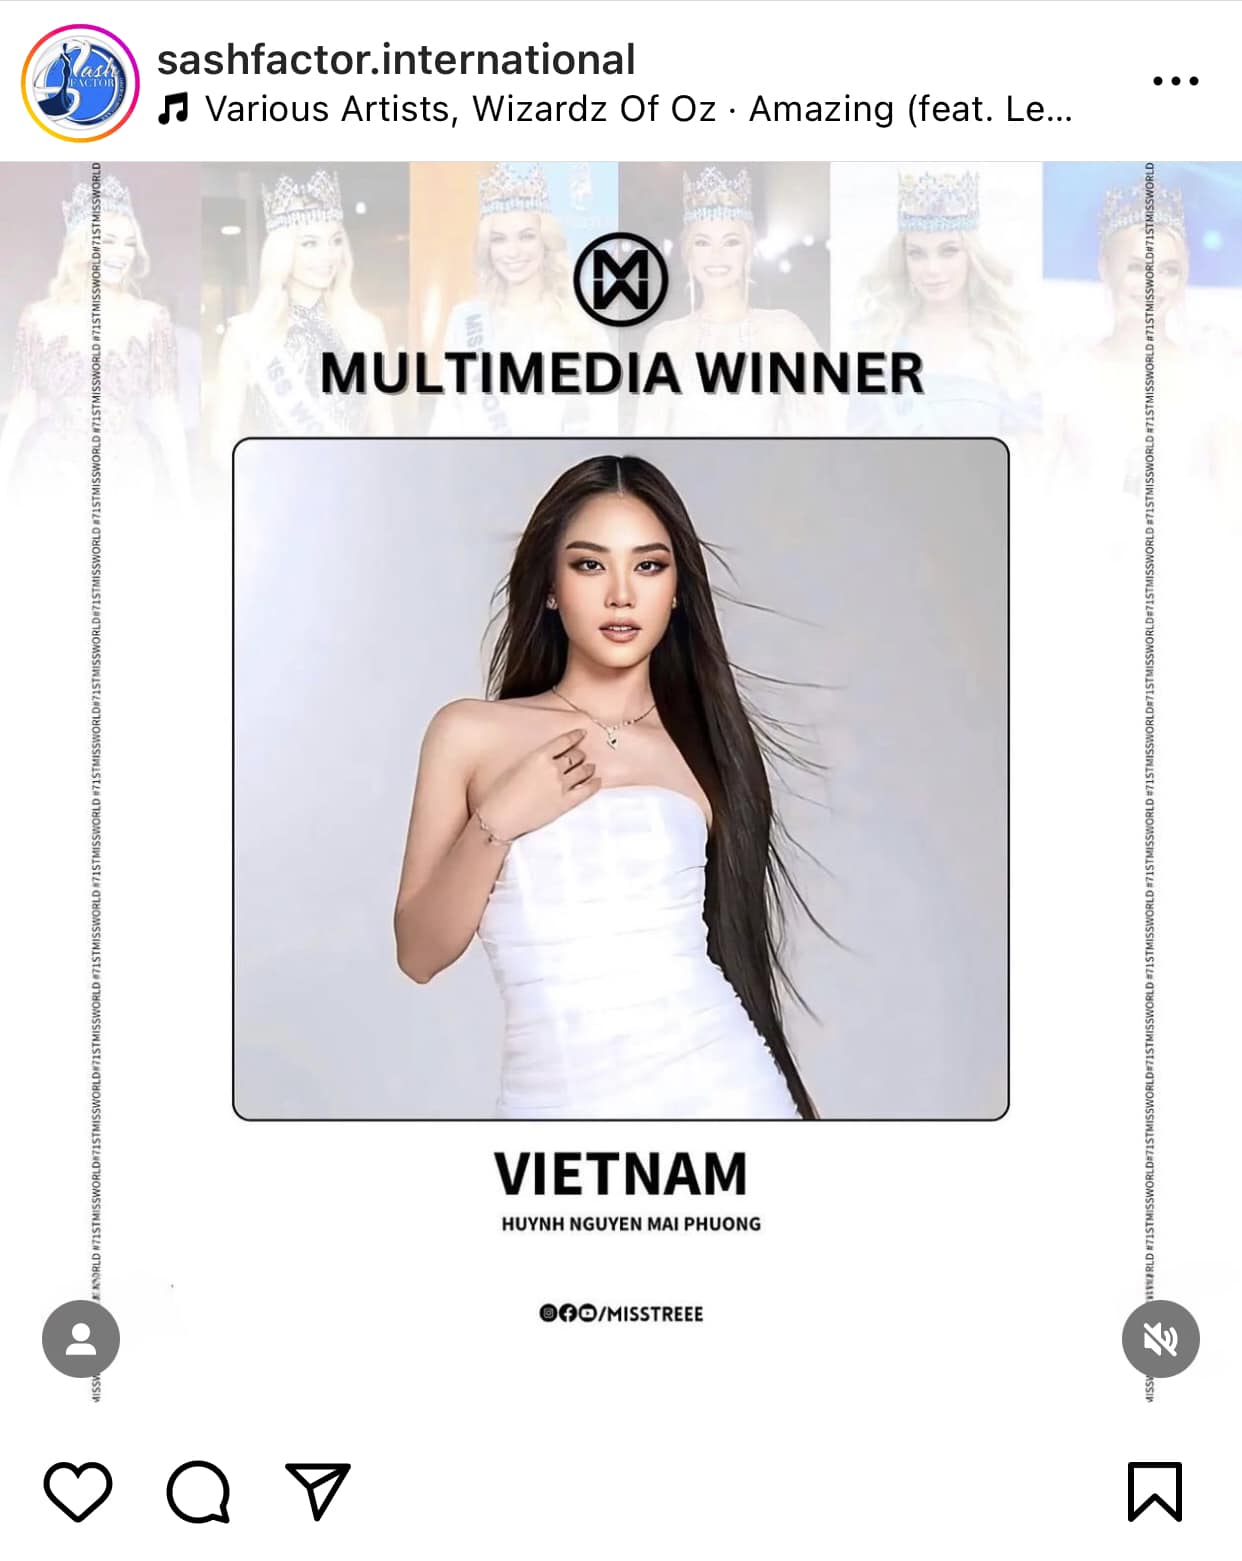 Các tài khoản theo dõi hoa hậu đều đưa tin về chiến thắng của đại diện Việt Nam